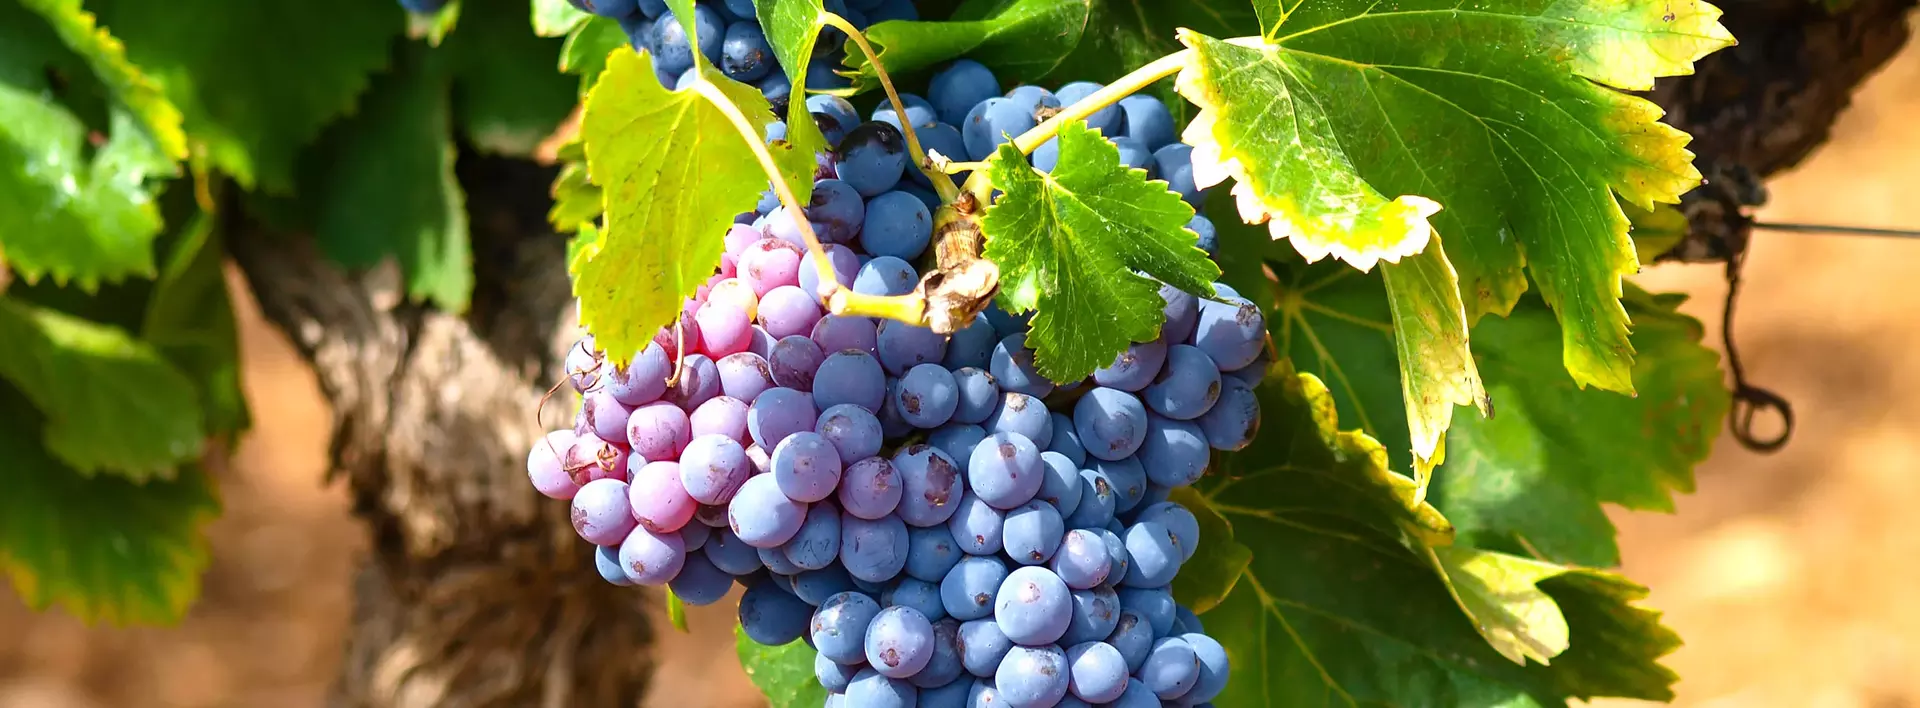 Urlaub auf dem Weingut - reife Trauben an den Weinreben vor der Weinlese